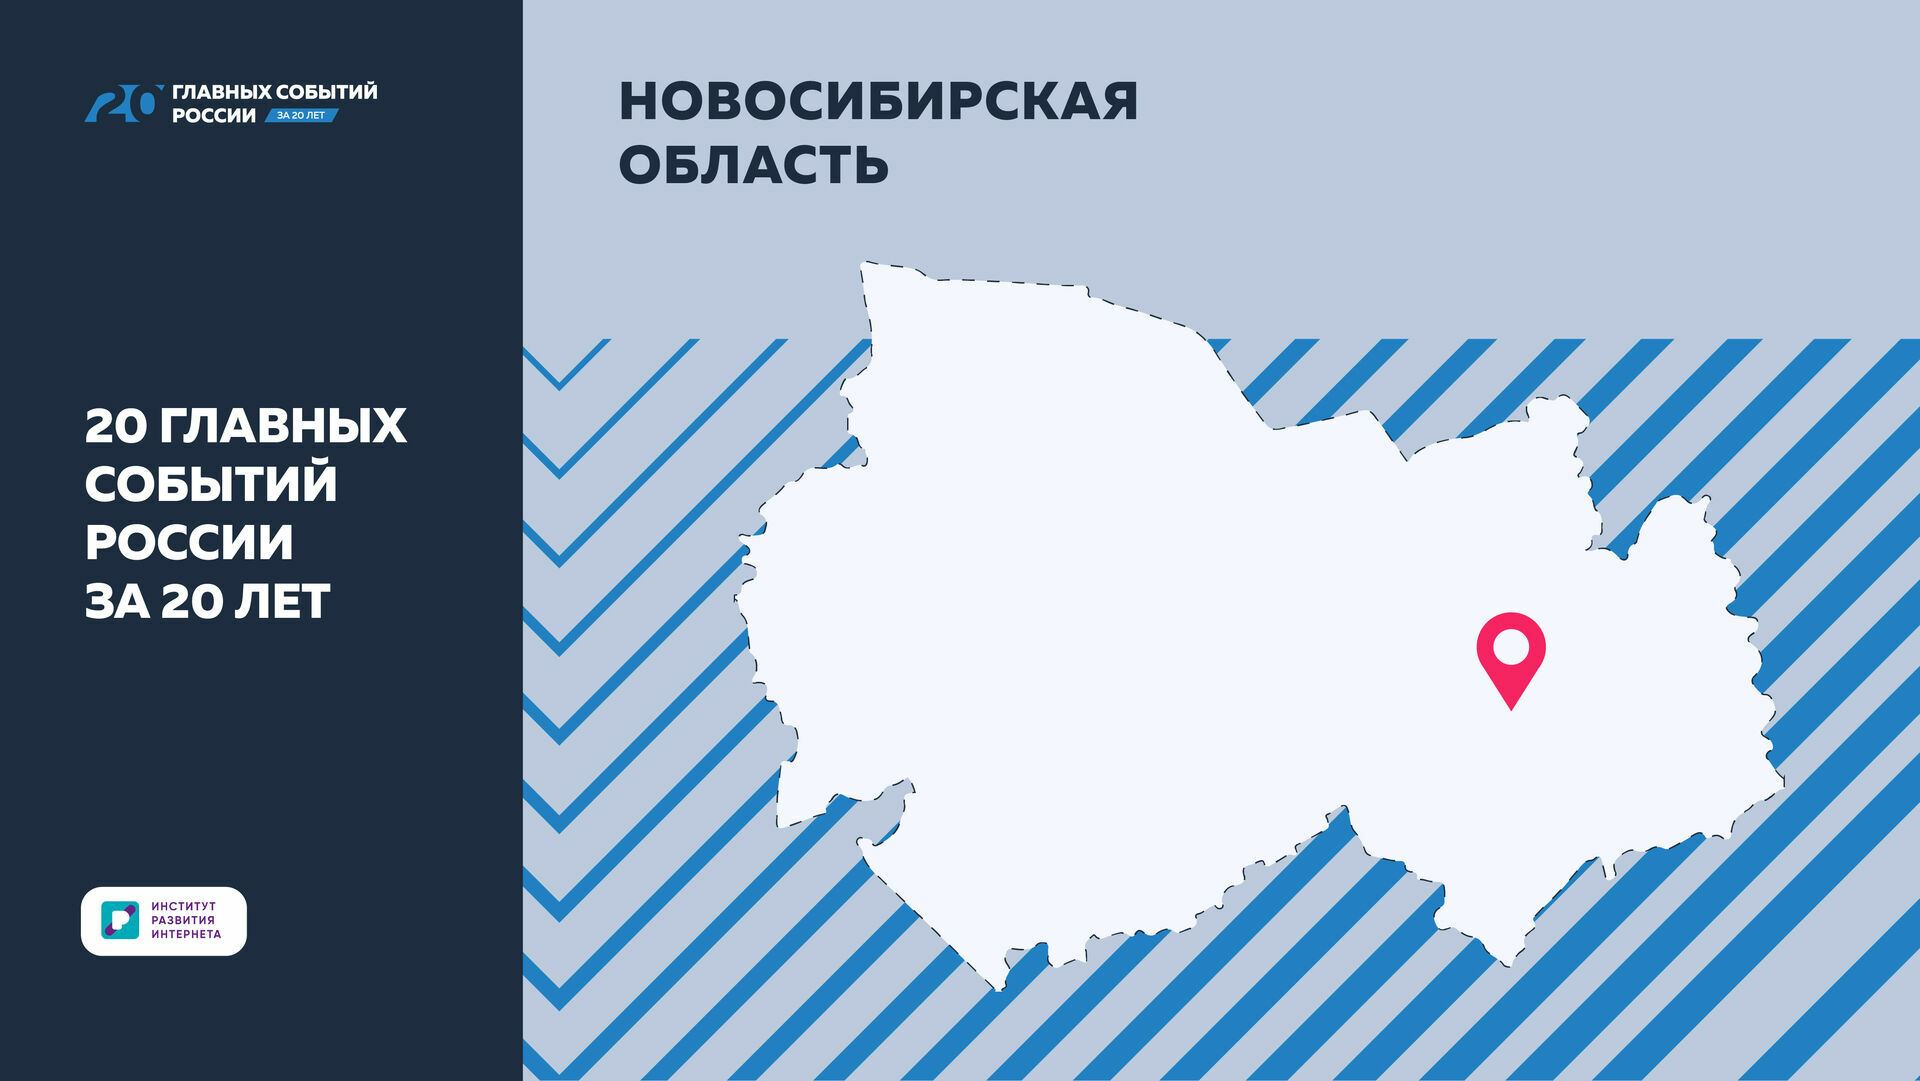 «20 главных событий России за 20 лет»: открытие новой станции метро в Новосибирске